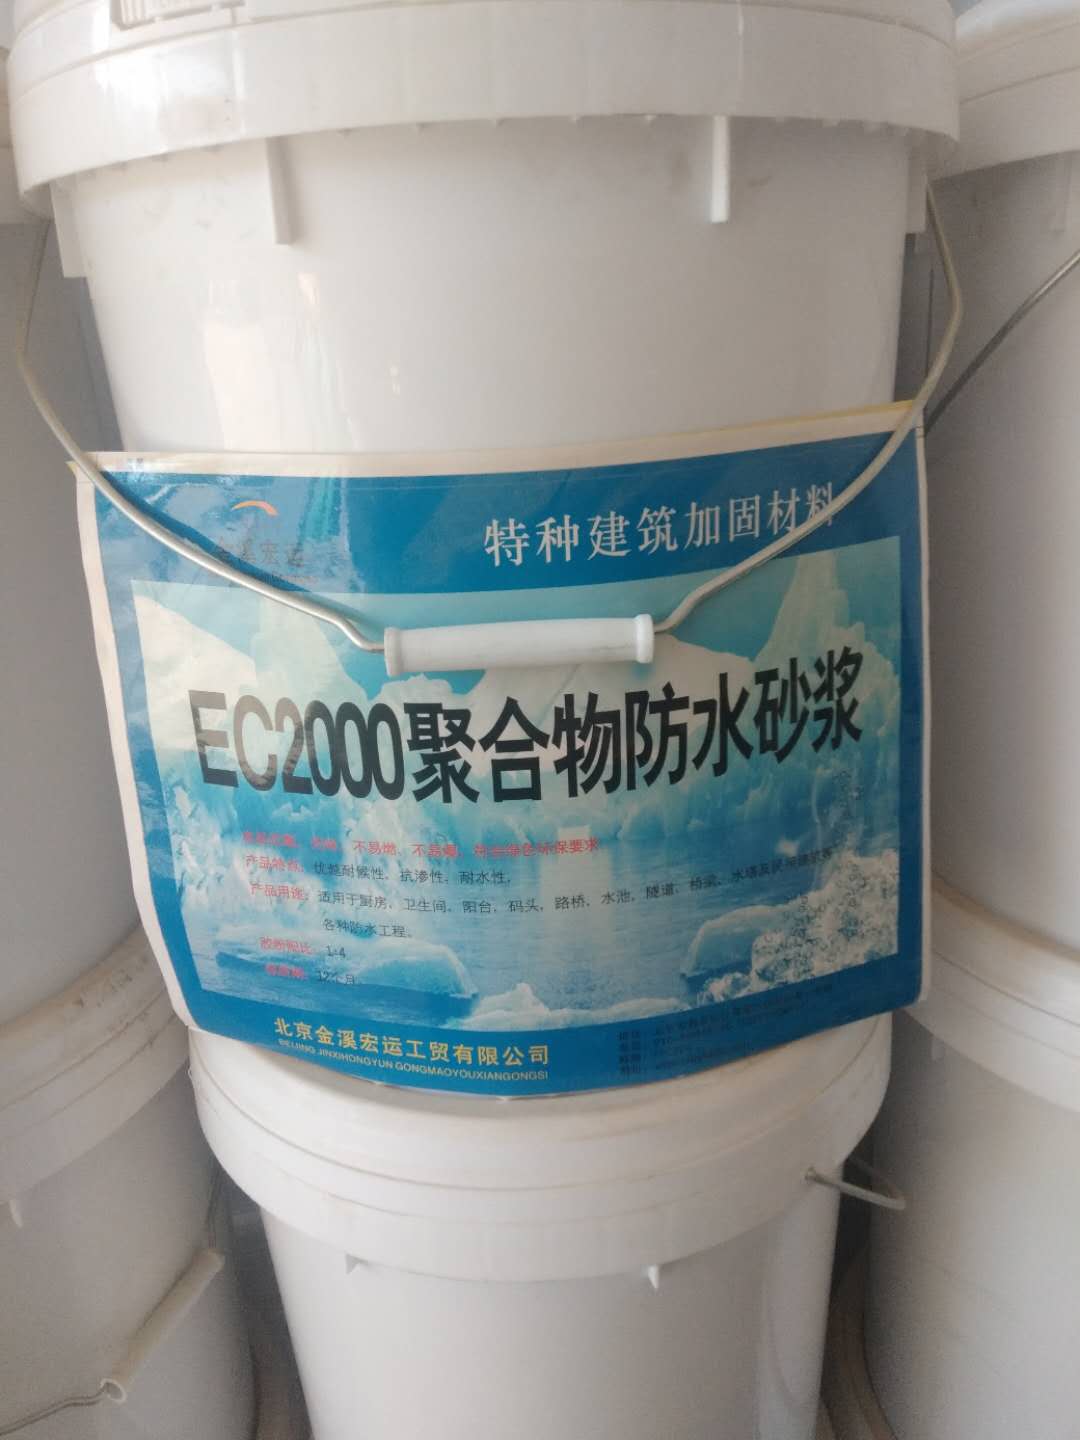 EC2000聚合物防水砂浆 厂家供货